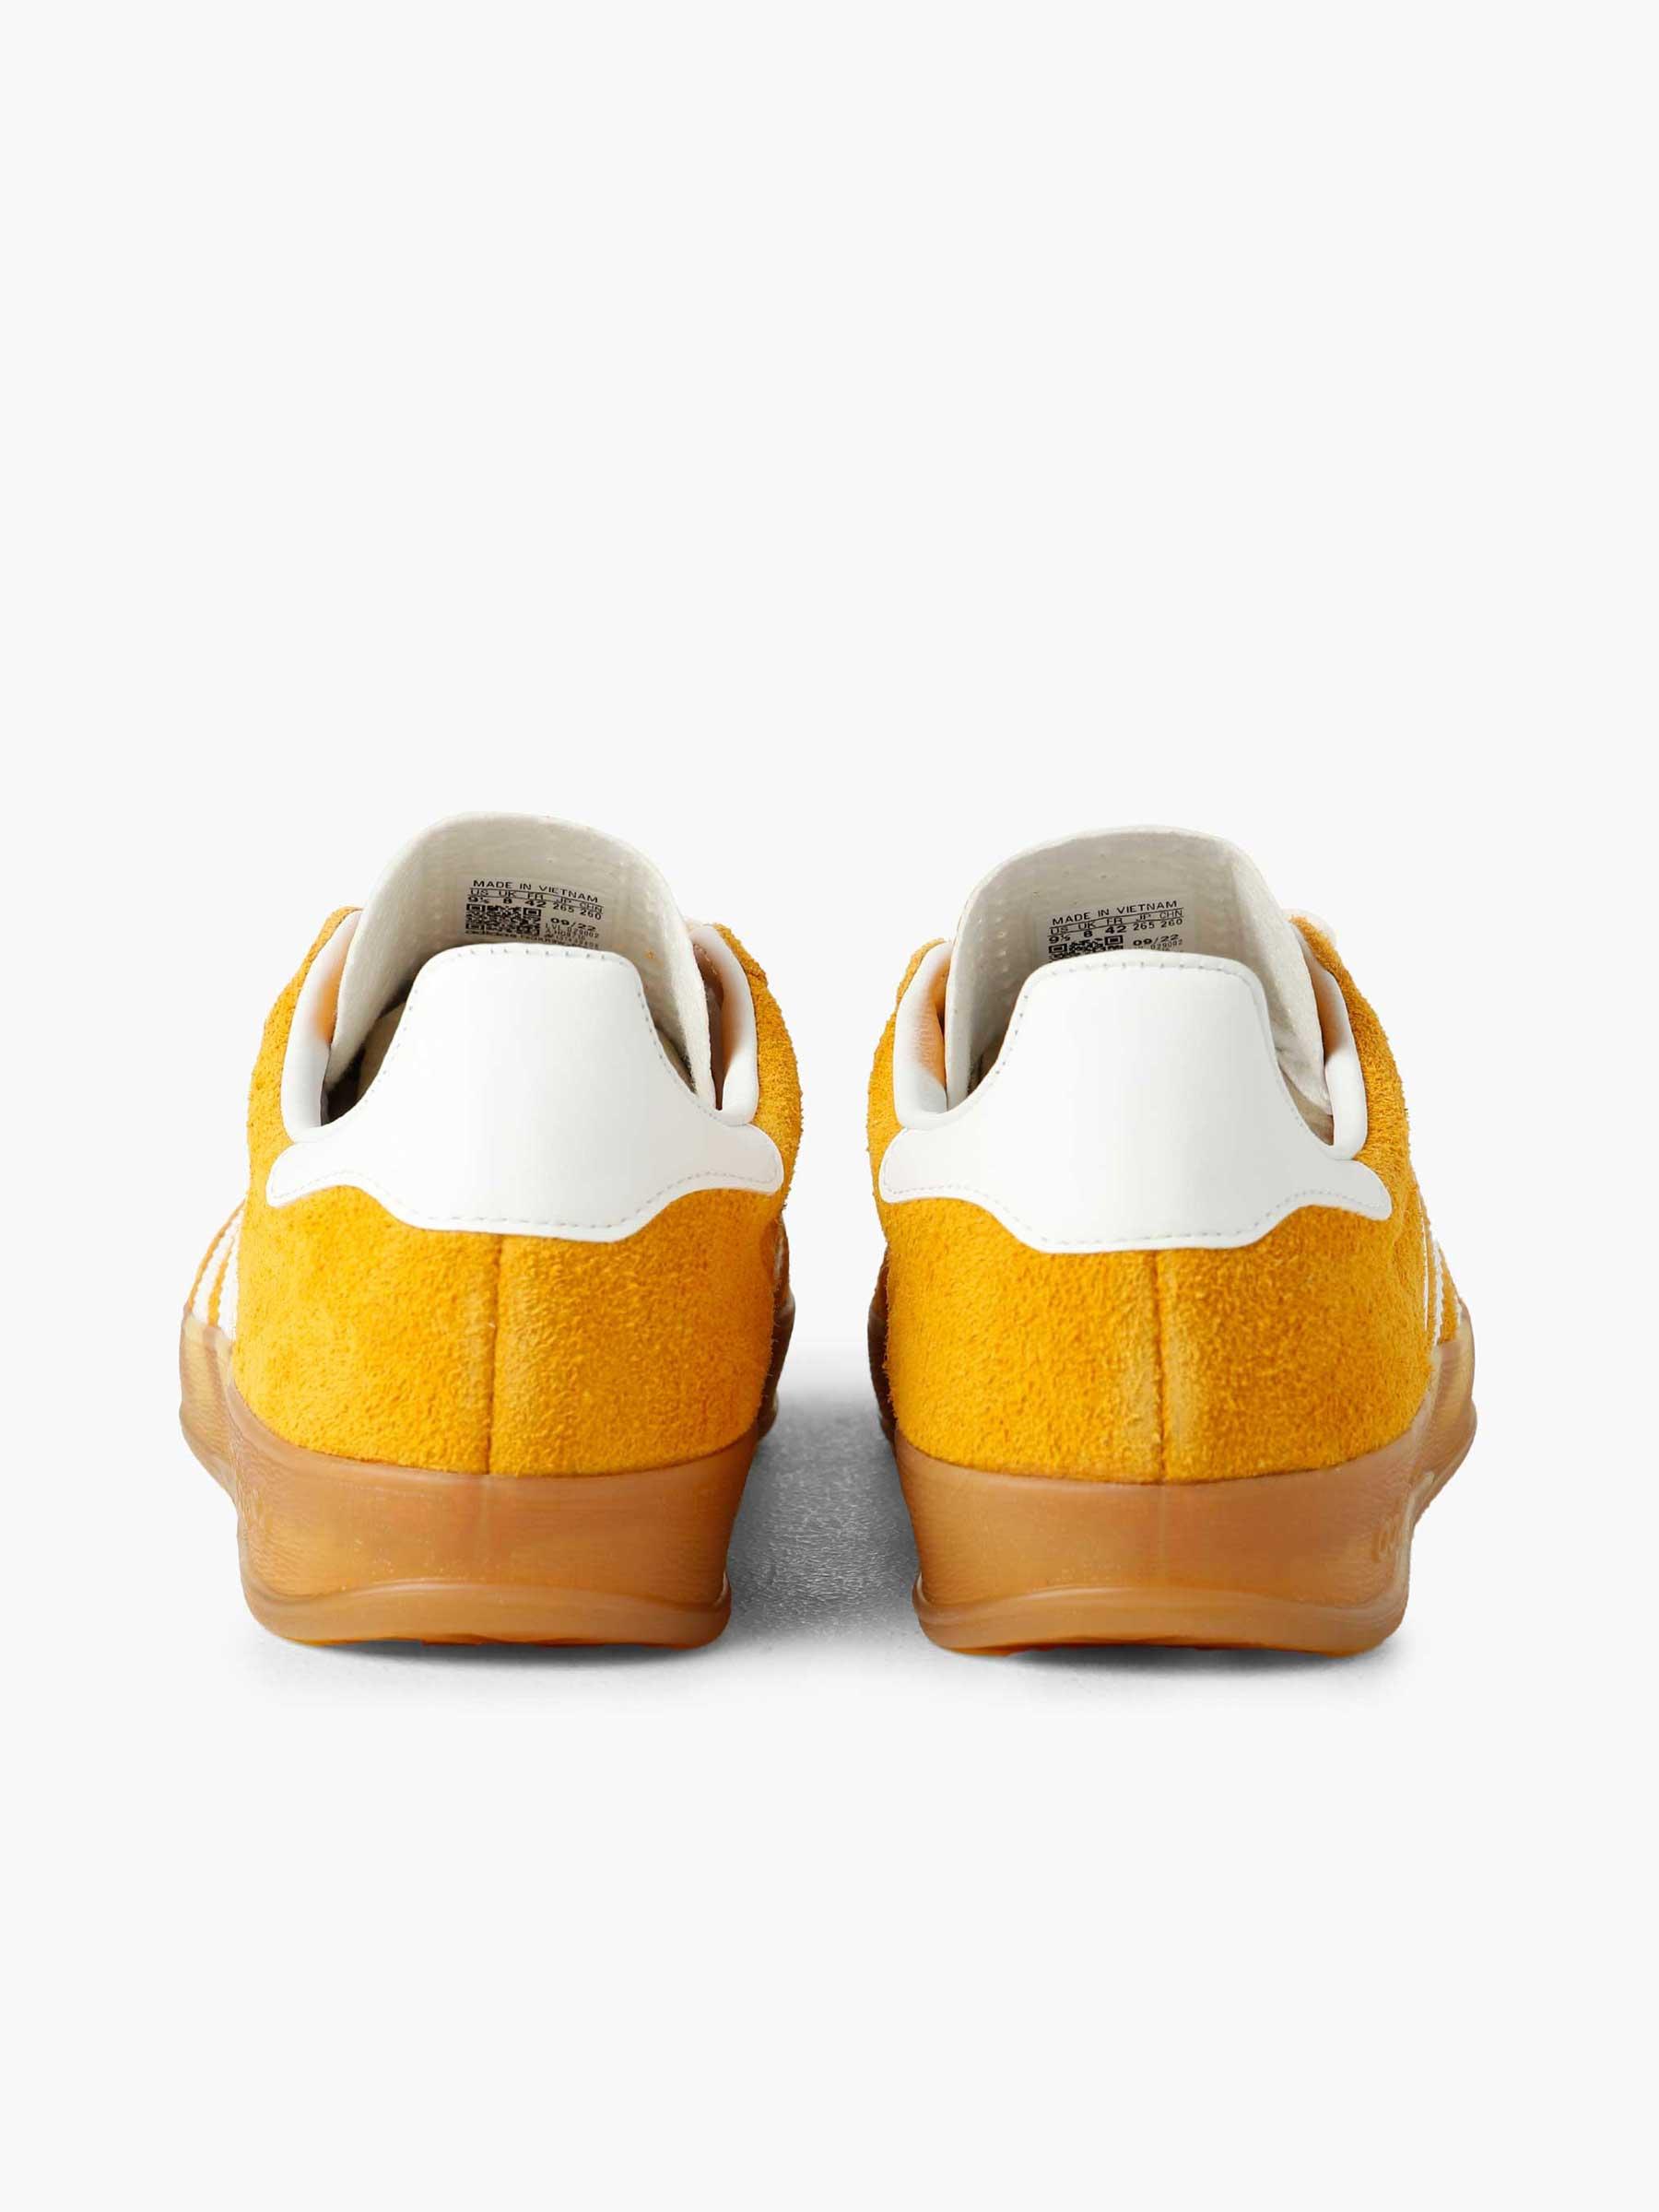 adidas Gazelle Indoor Supcol Footwear White Gold Metallic - Freshcotton